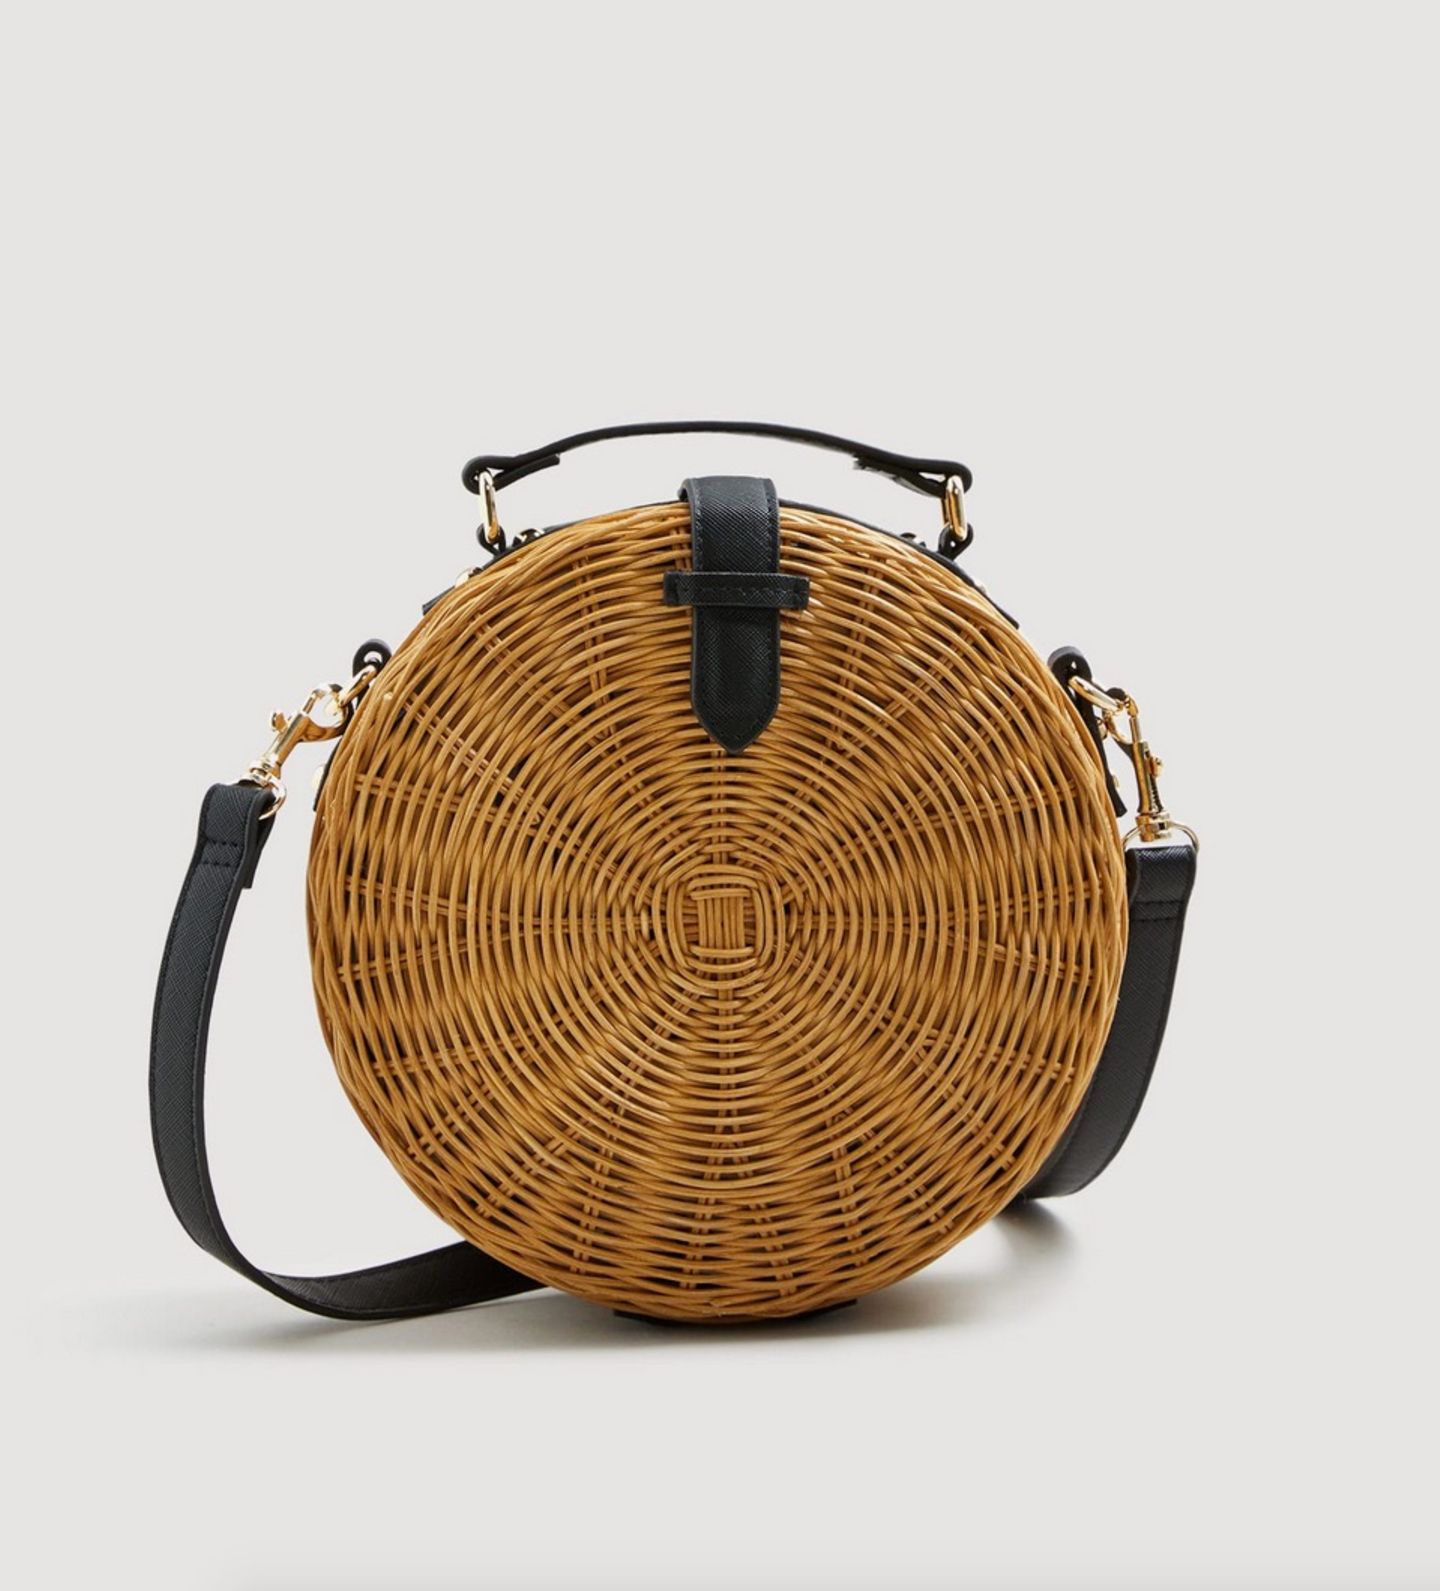 Total angesagt in diesem Sommer: Runde Taschen aus Bambus. Wir sind schon ganz verliebt in den Style. Dieses Modell ist von Mango und für circa 50 Euro erhältlich.